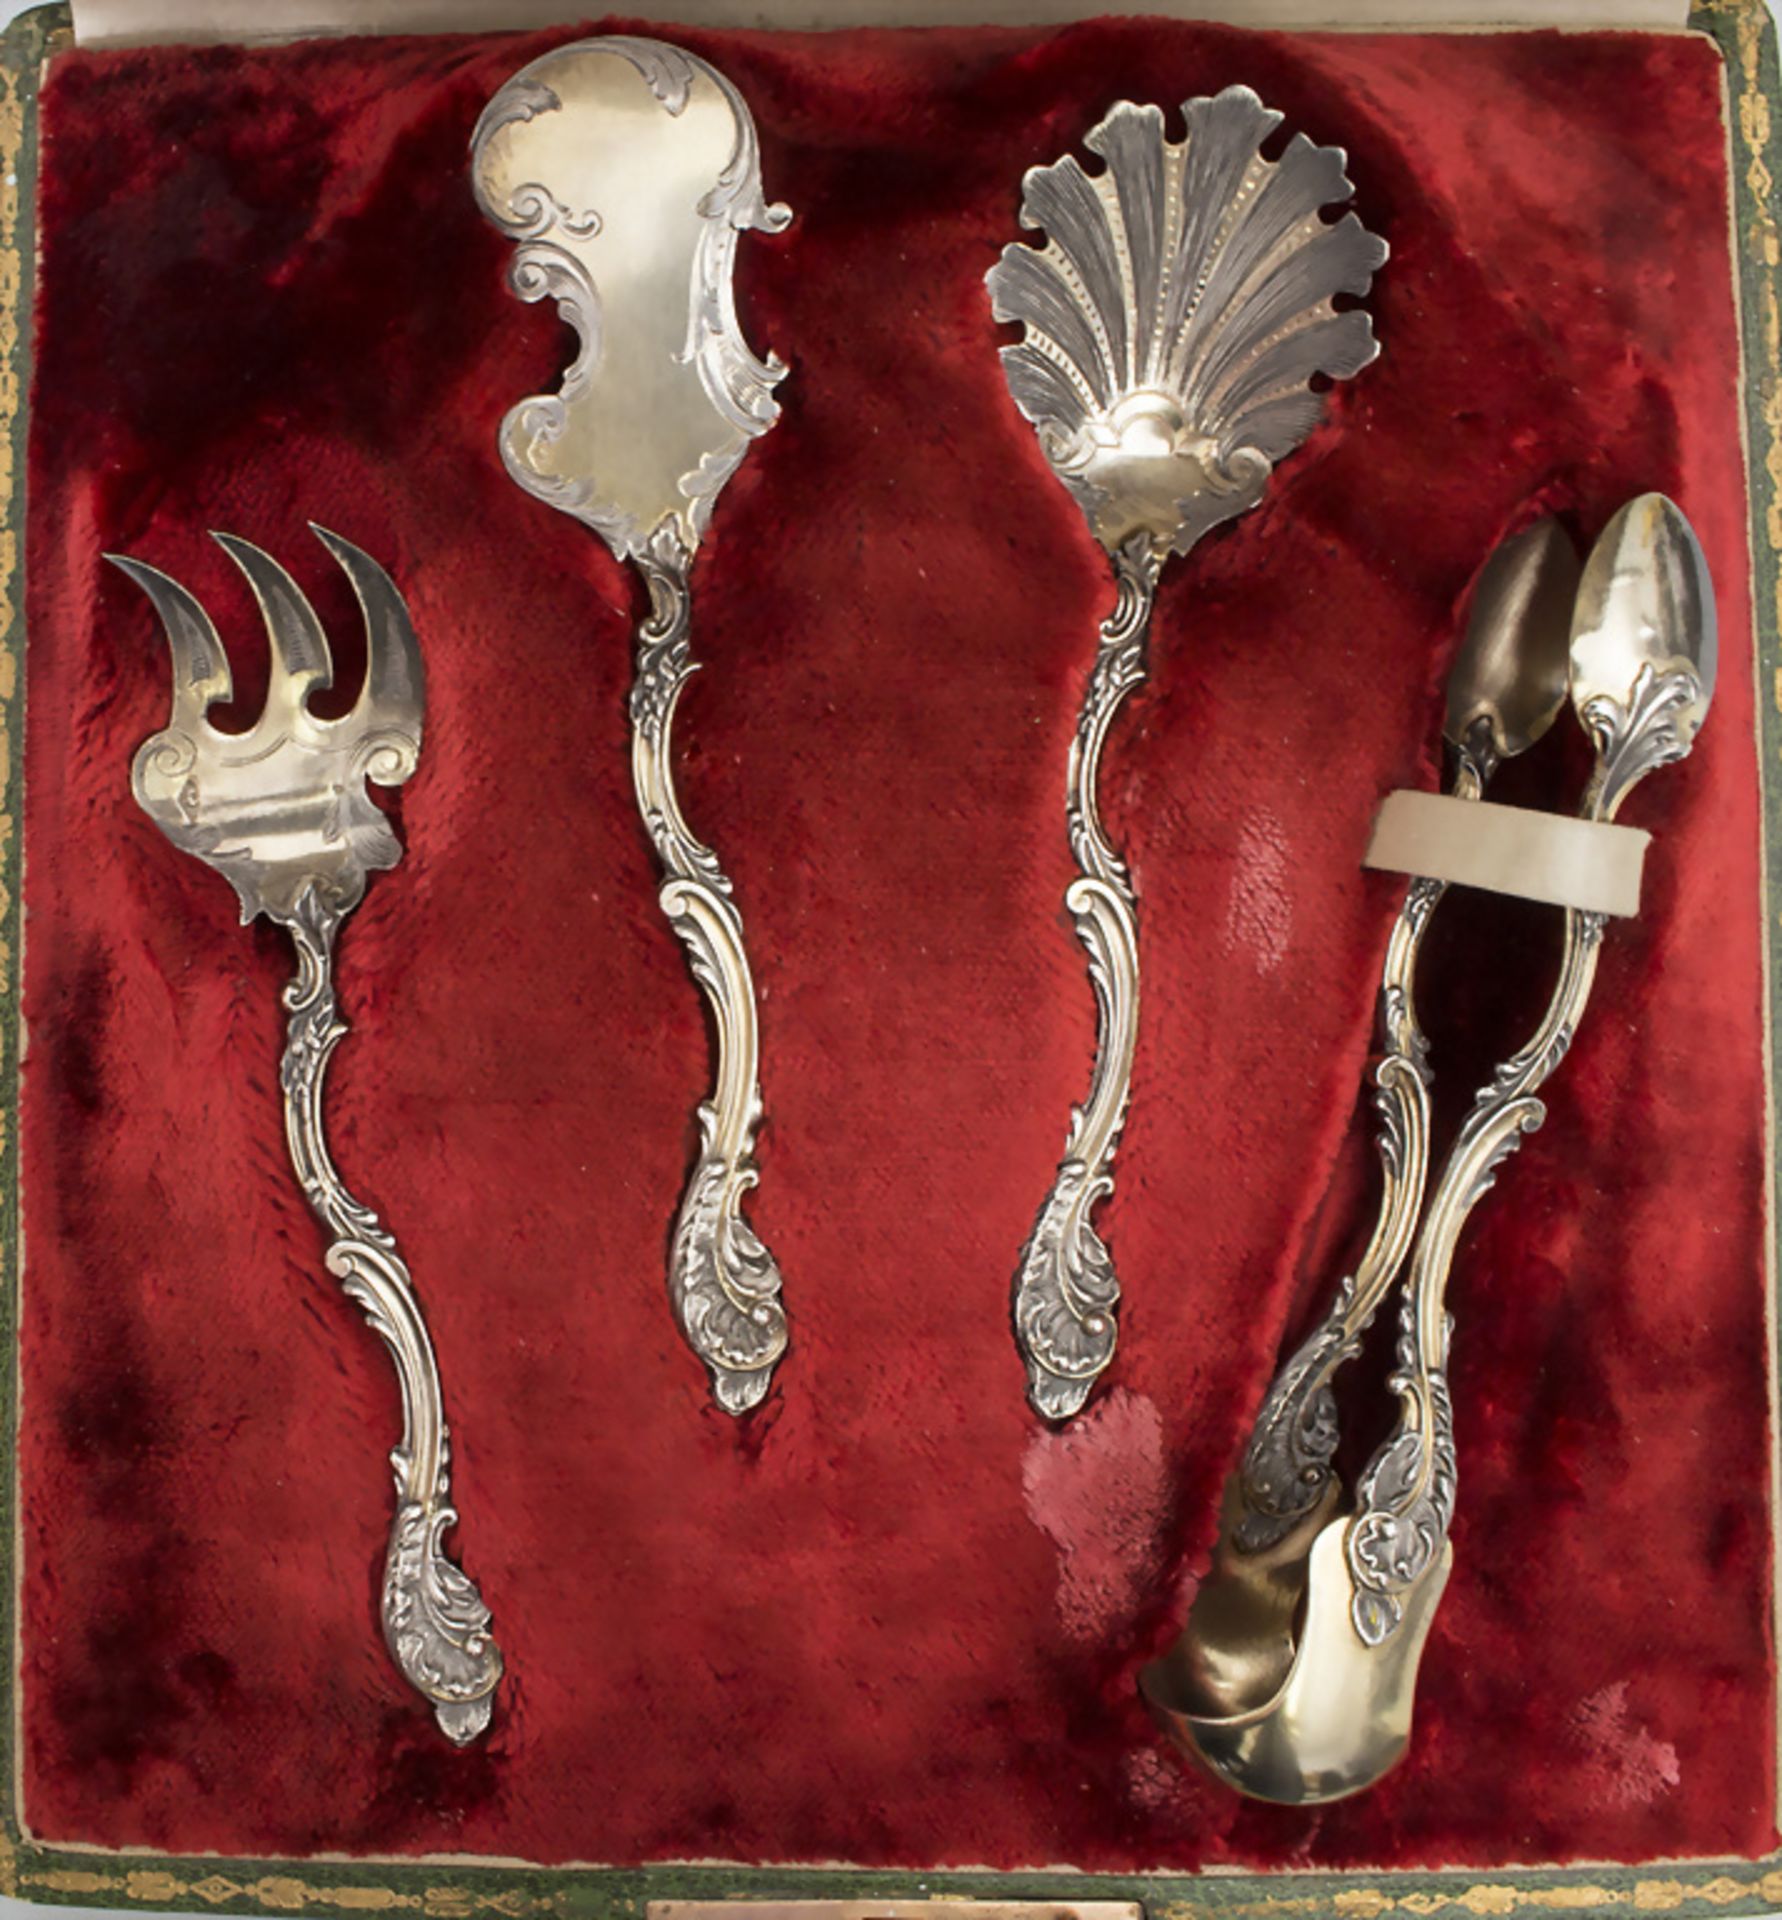 Vierteiliges Vorlegebesteck / A four-part silver serving cutlery, Alphonse Debain, Paris, um 1900 - Bild 9 aus 9